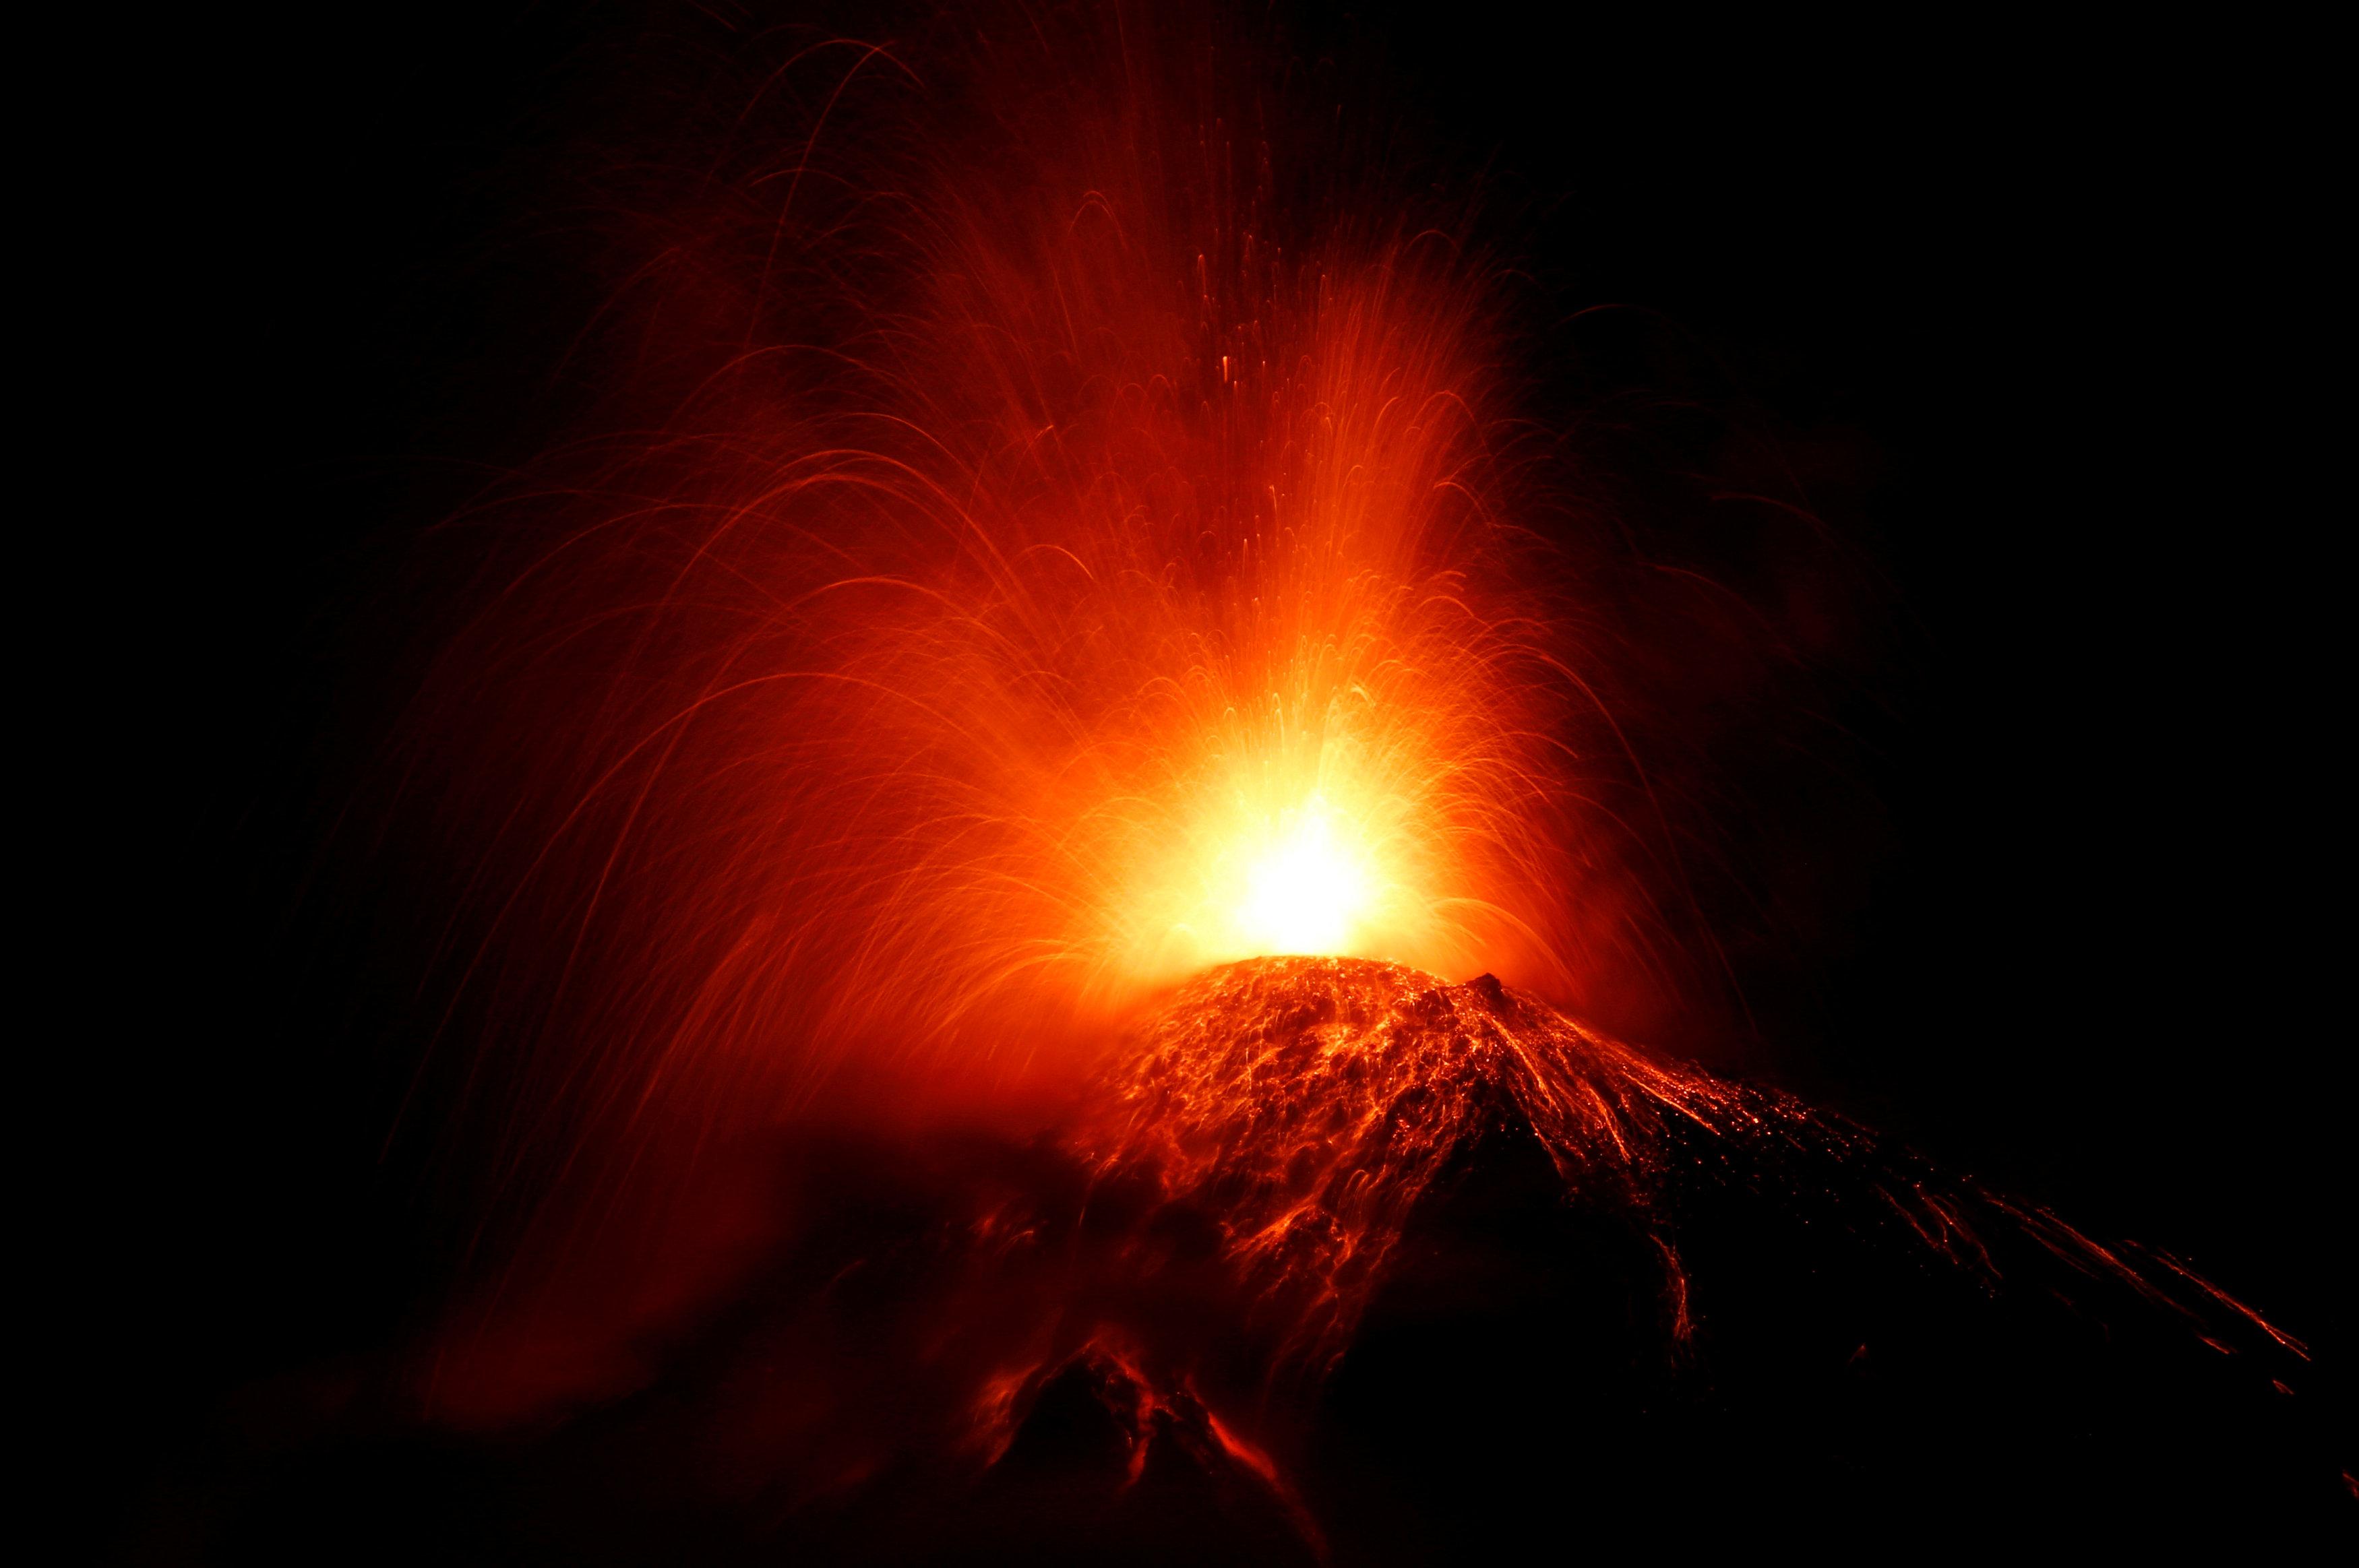 Fuego Volcano Eruption 2018 11 20 00 41 08.JPG